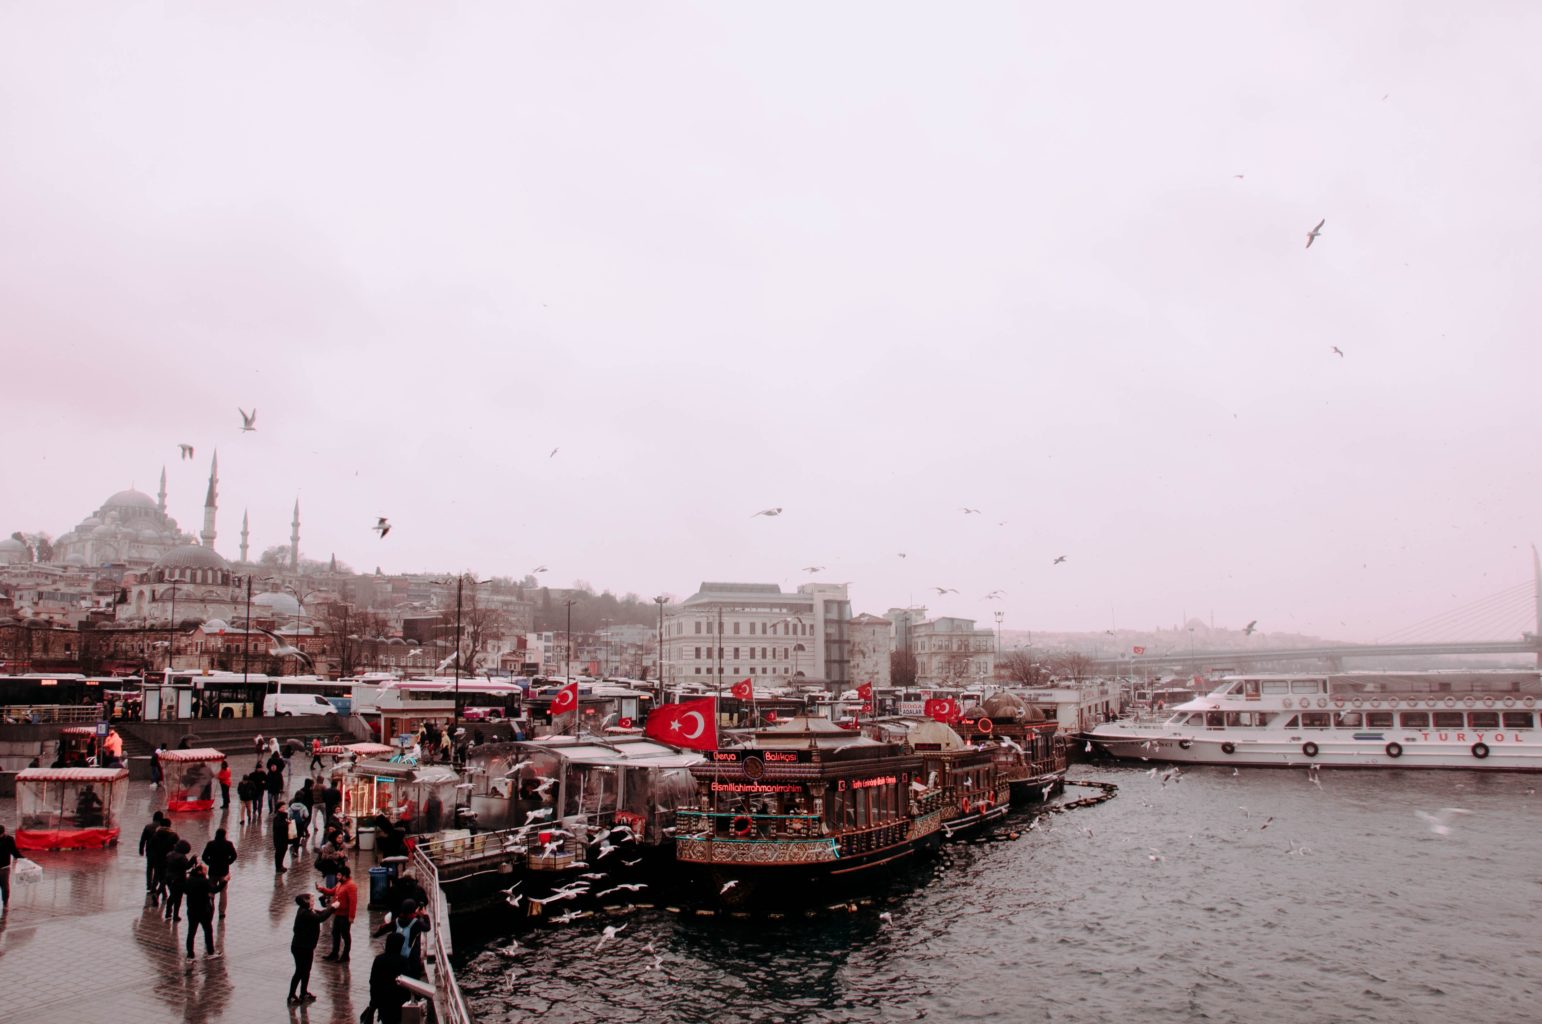 Ein belebter Hafenpier in Istanbul. Credits: Samet Kurtkus